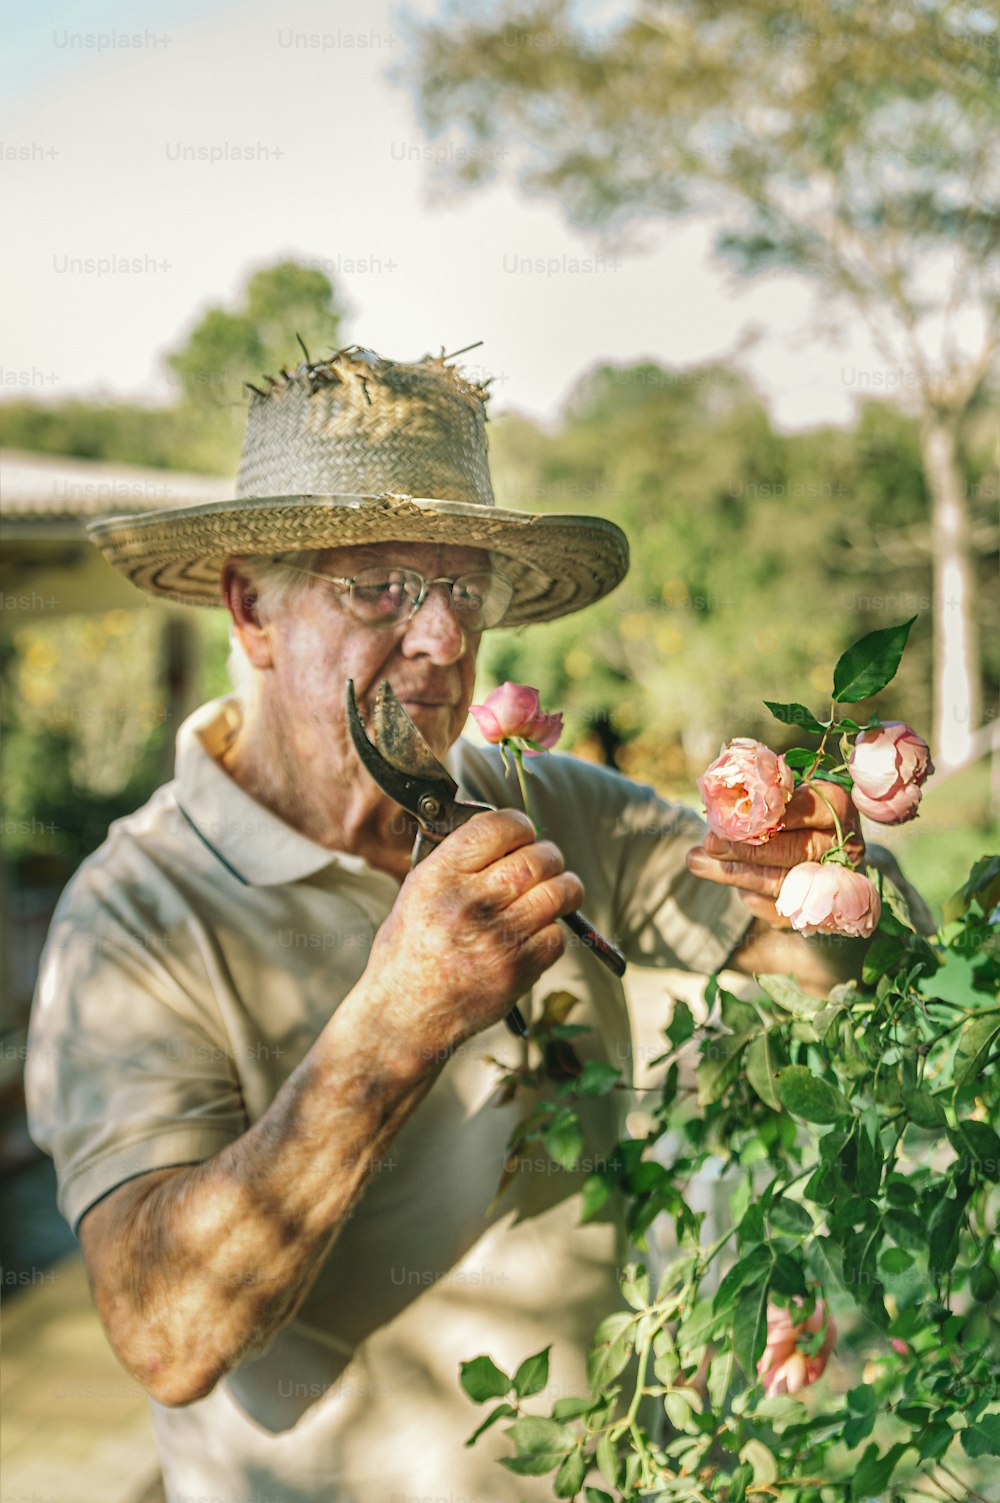 Un uomo con un cappello di paglia sta tagliando un cespuglio di rose